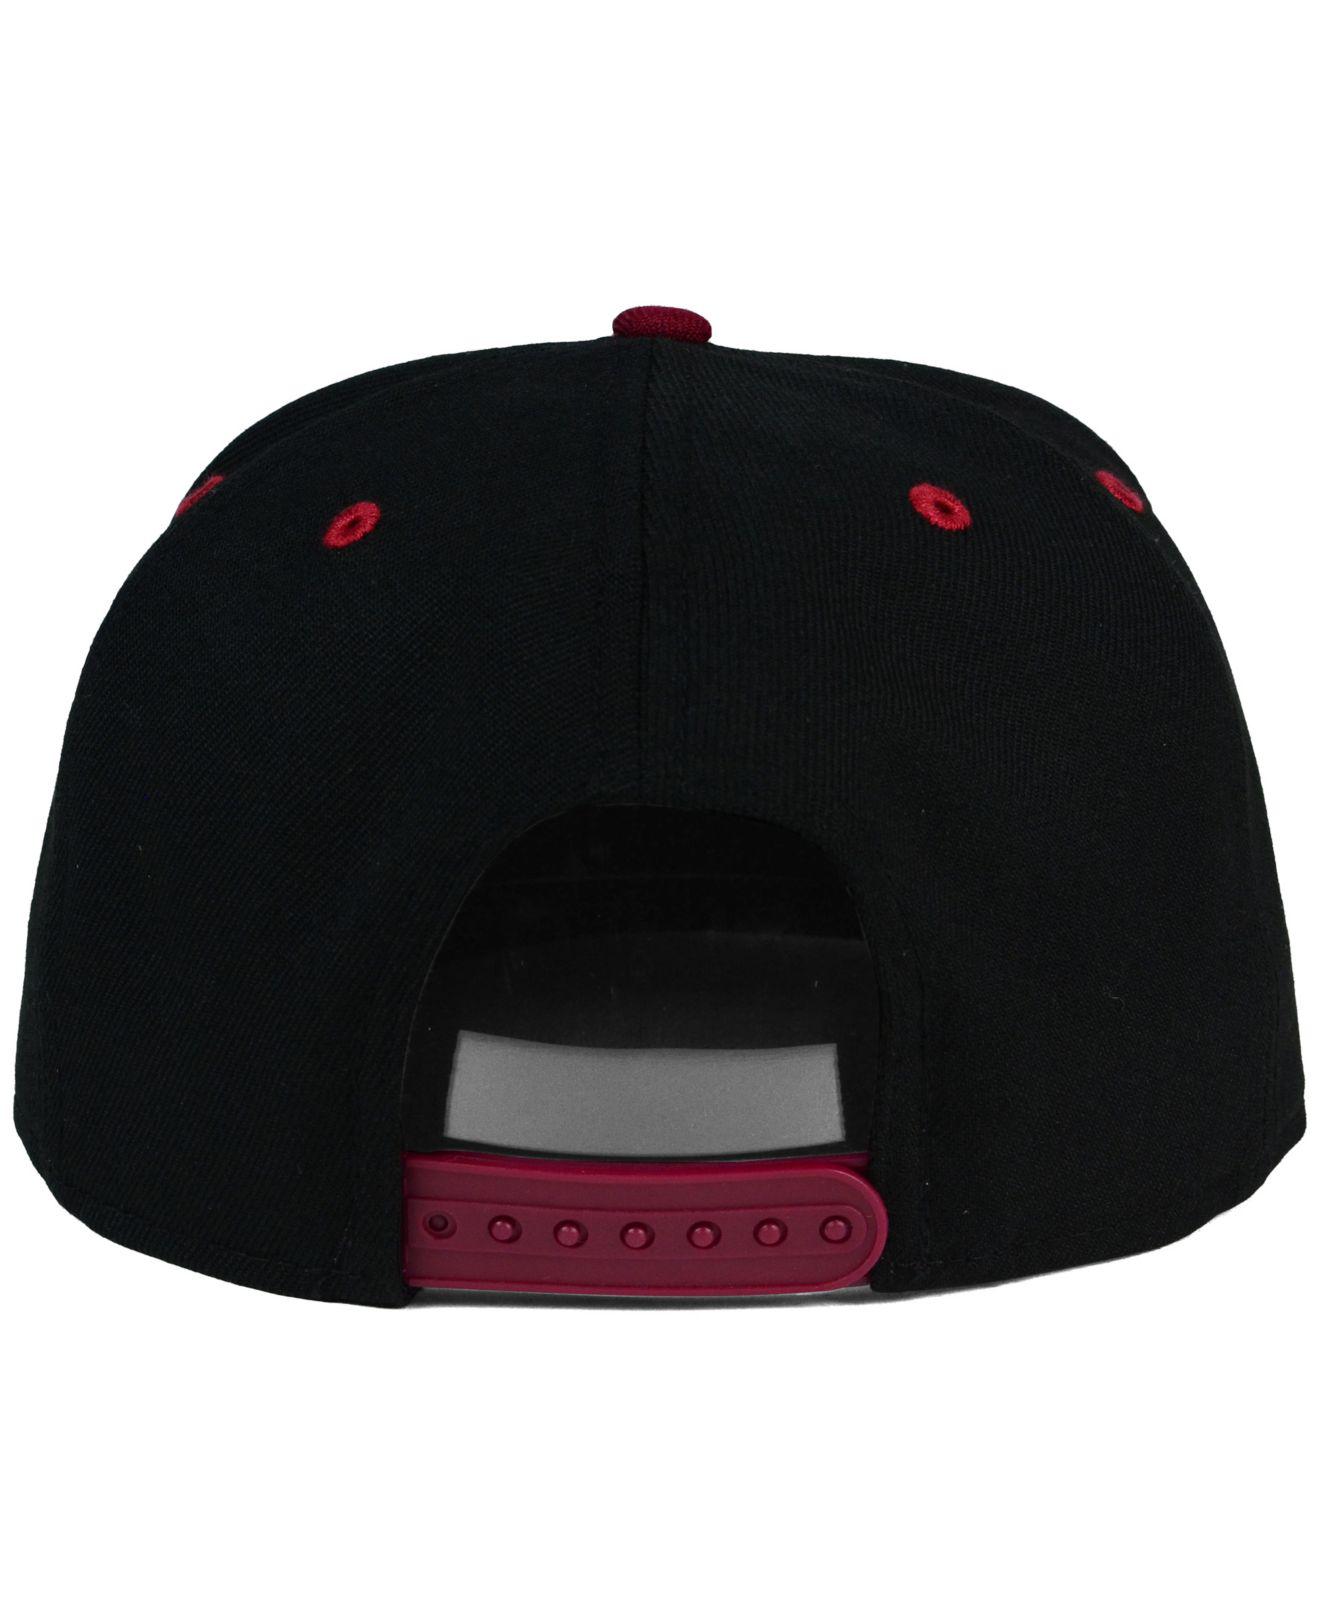 Topikat - Supreme X LV Baseball Cap Black, Red 1